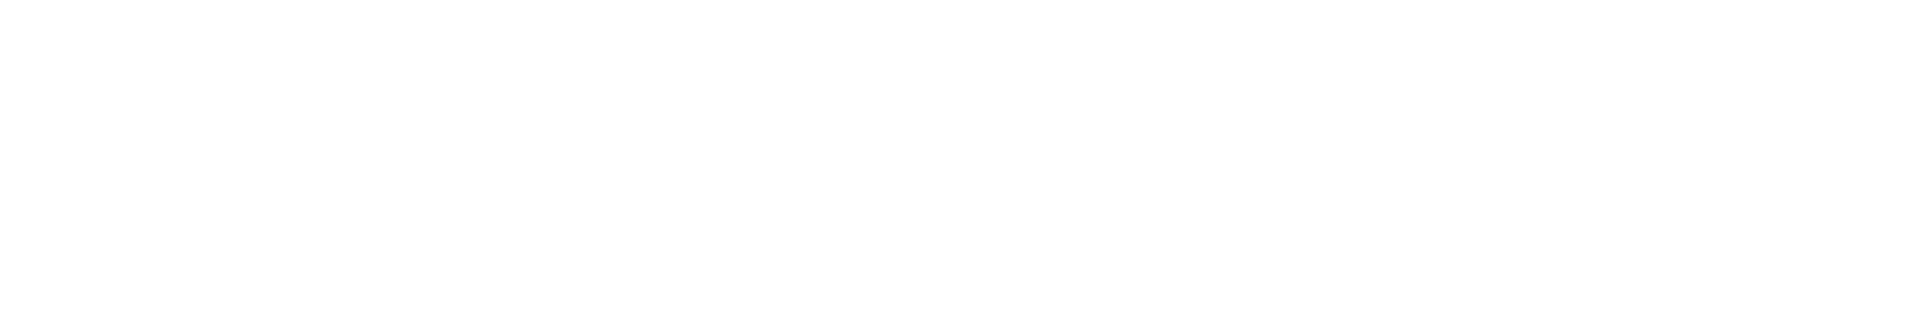 1920px-CheapTickets_logo-2